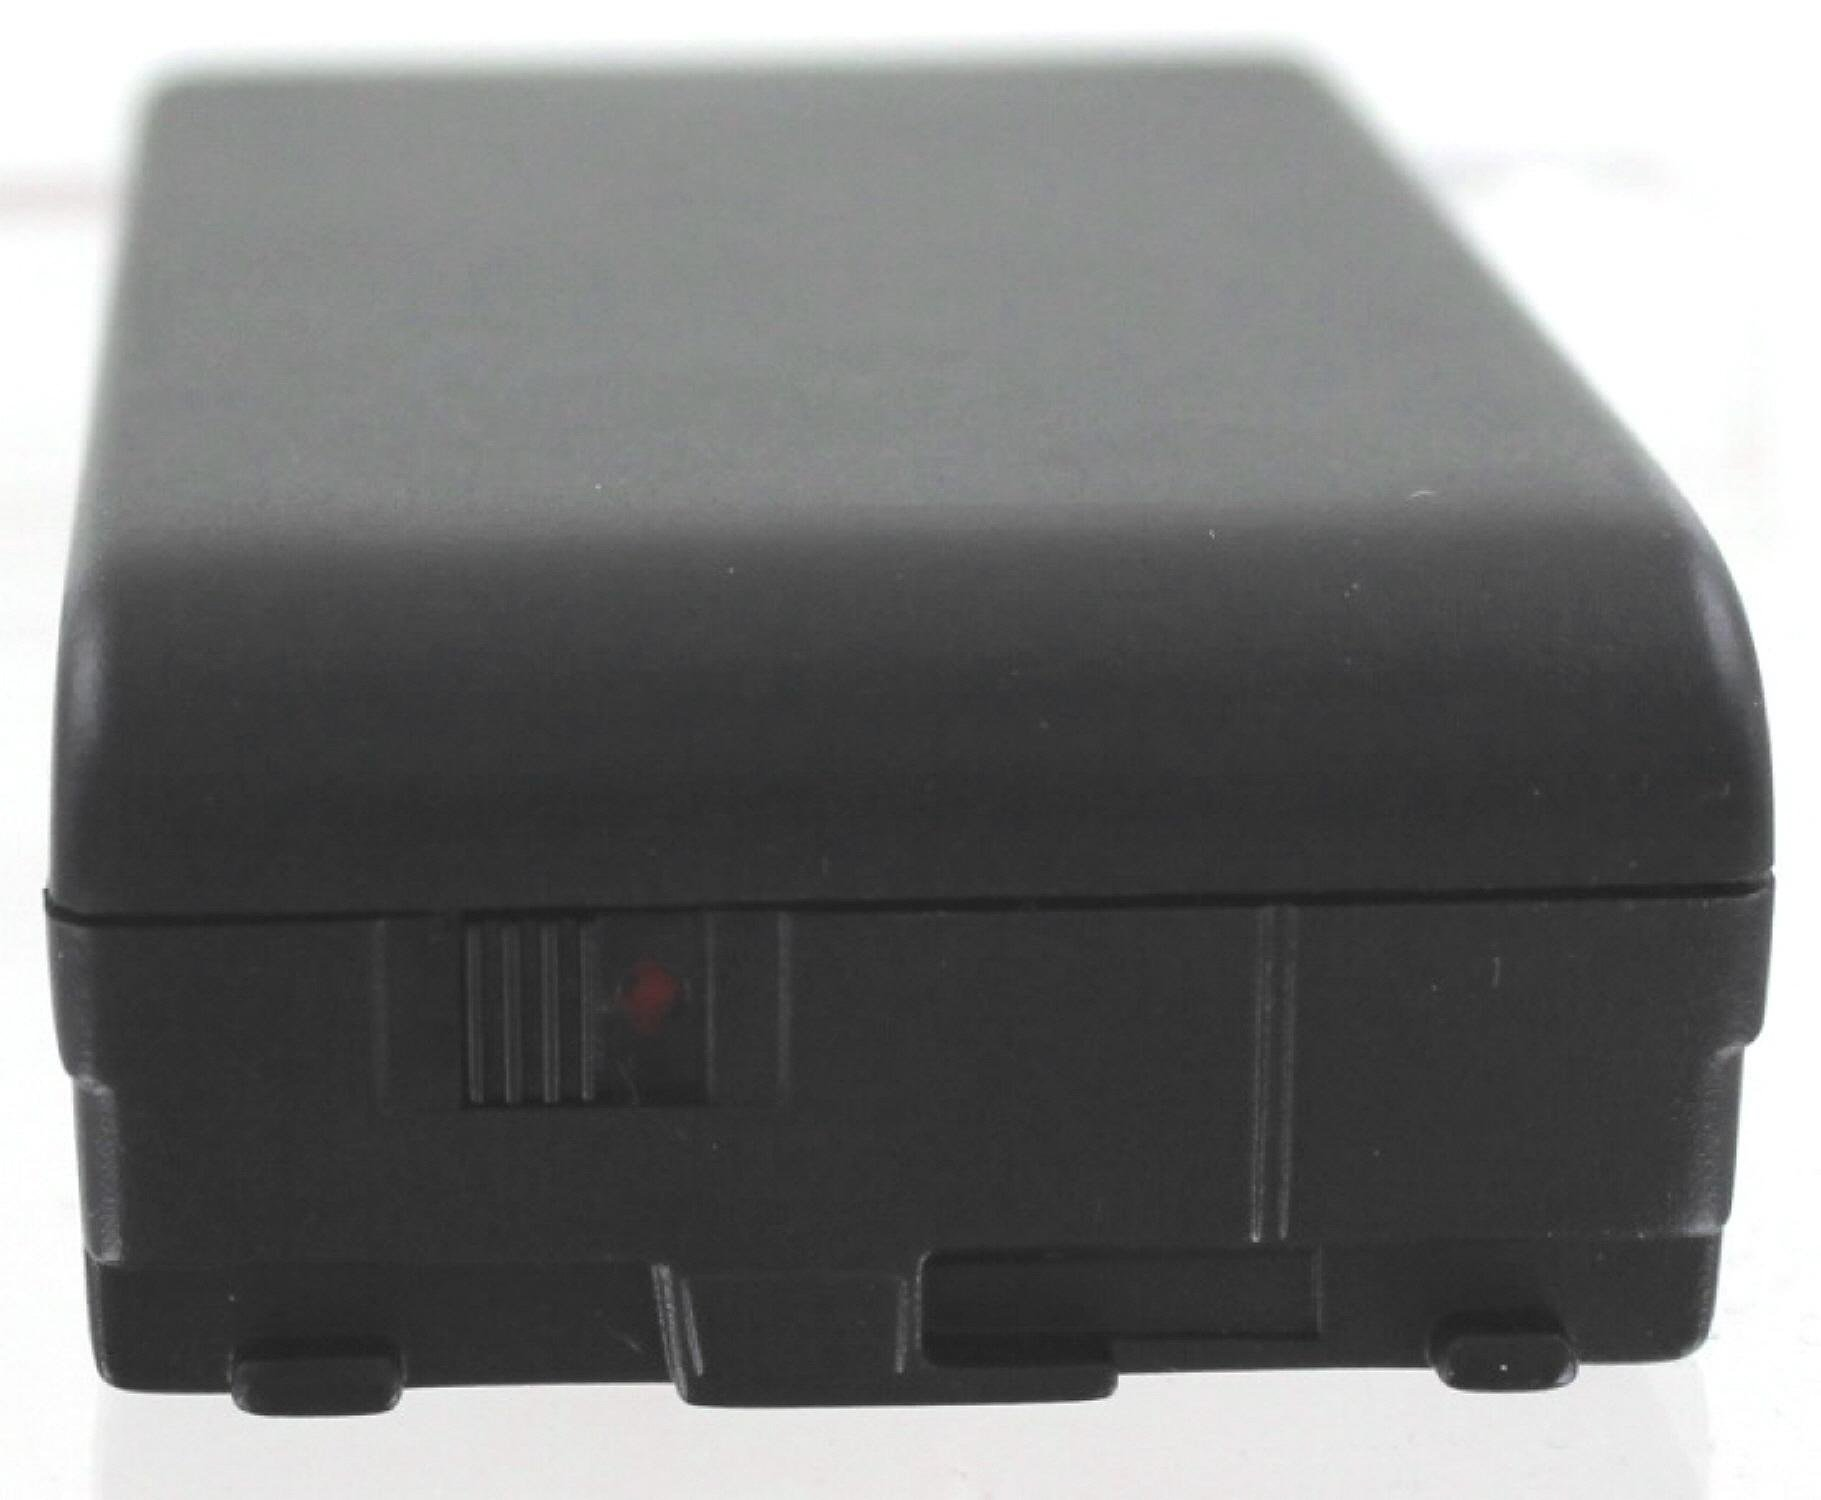 Camcorderakku, 2.000 AGI mAh NiMH kompatibel Sony CCD-TR805 Akku mit Volt, 6.0